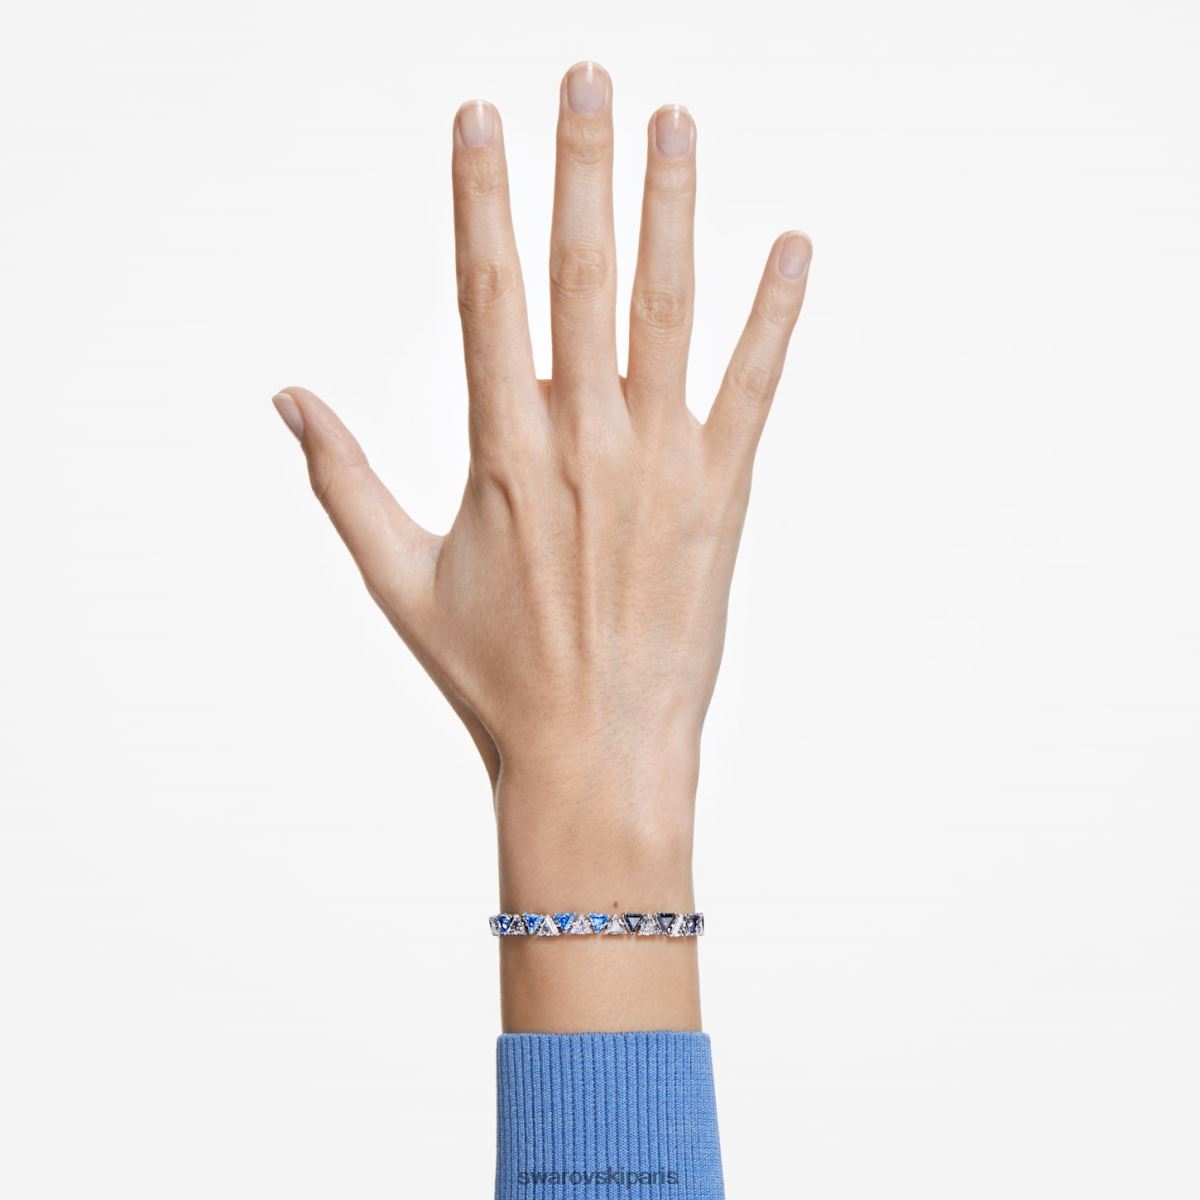 bijoux Swarovski bracelet ortyx coupe triangle, bleu, rhodié RZD0XJ558